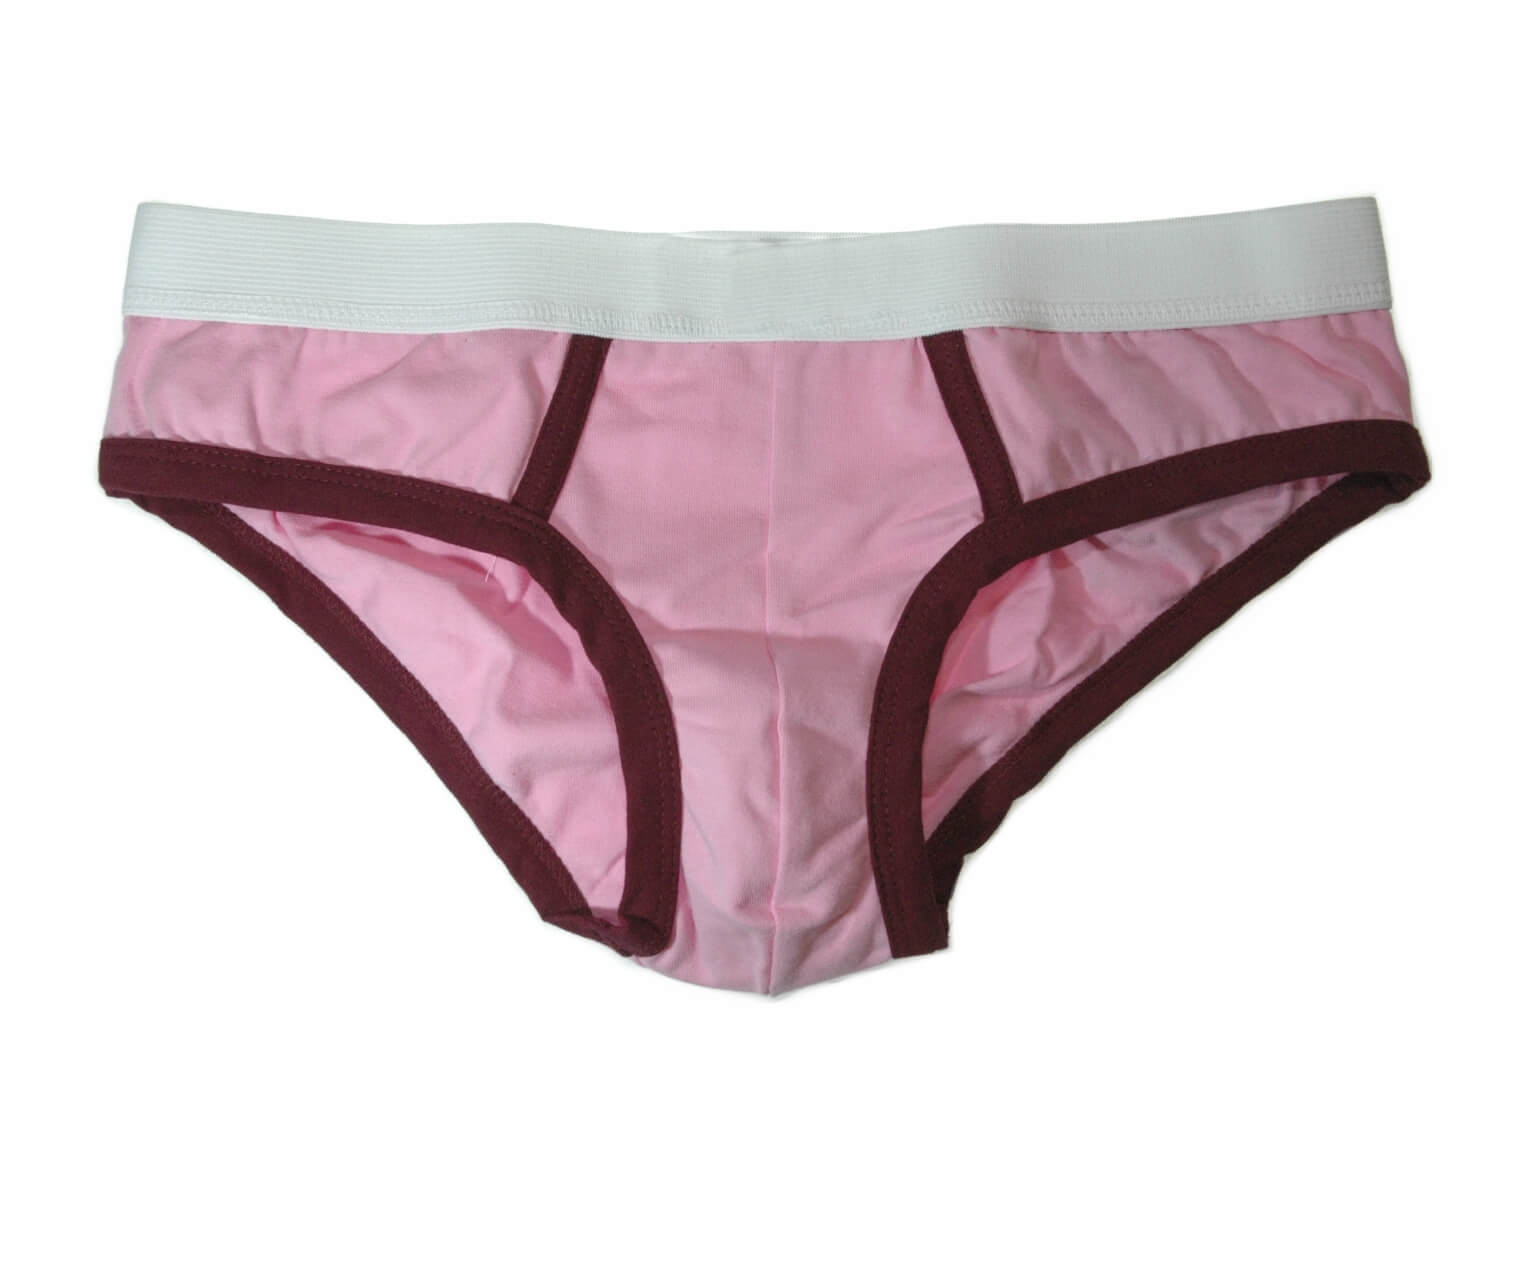 Underwear-Pink-000001823886_Medium.jpg.jpeg